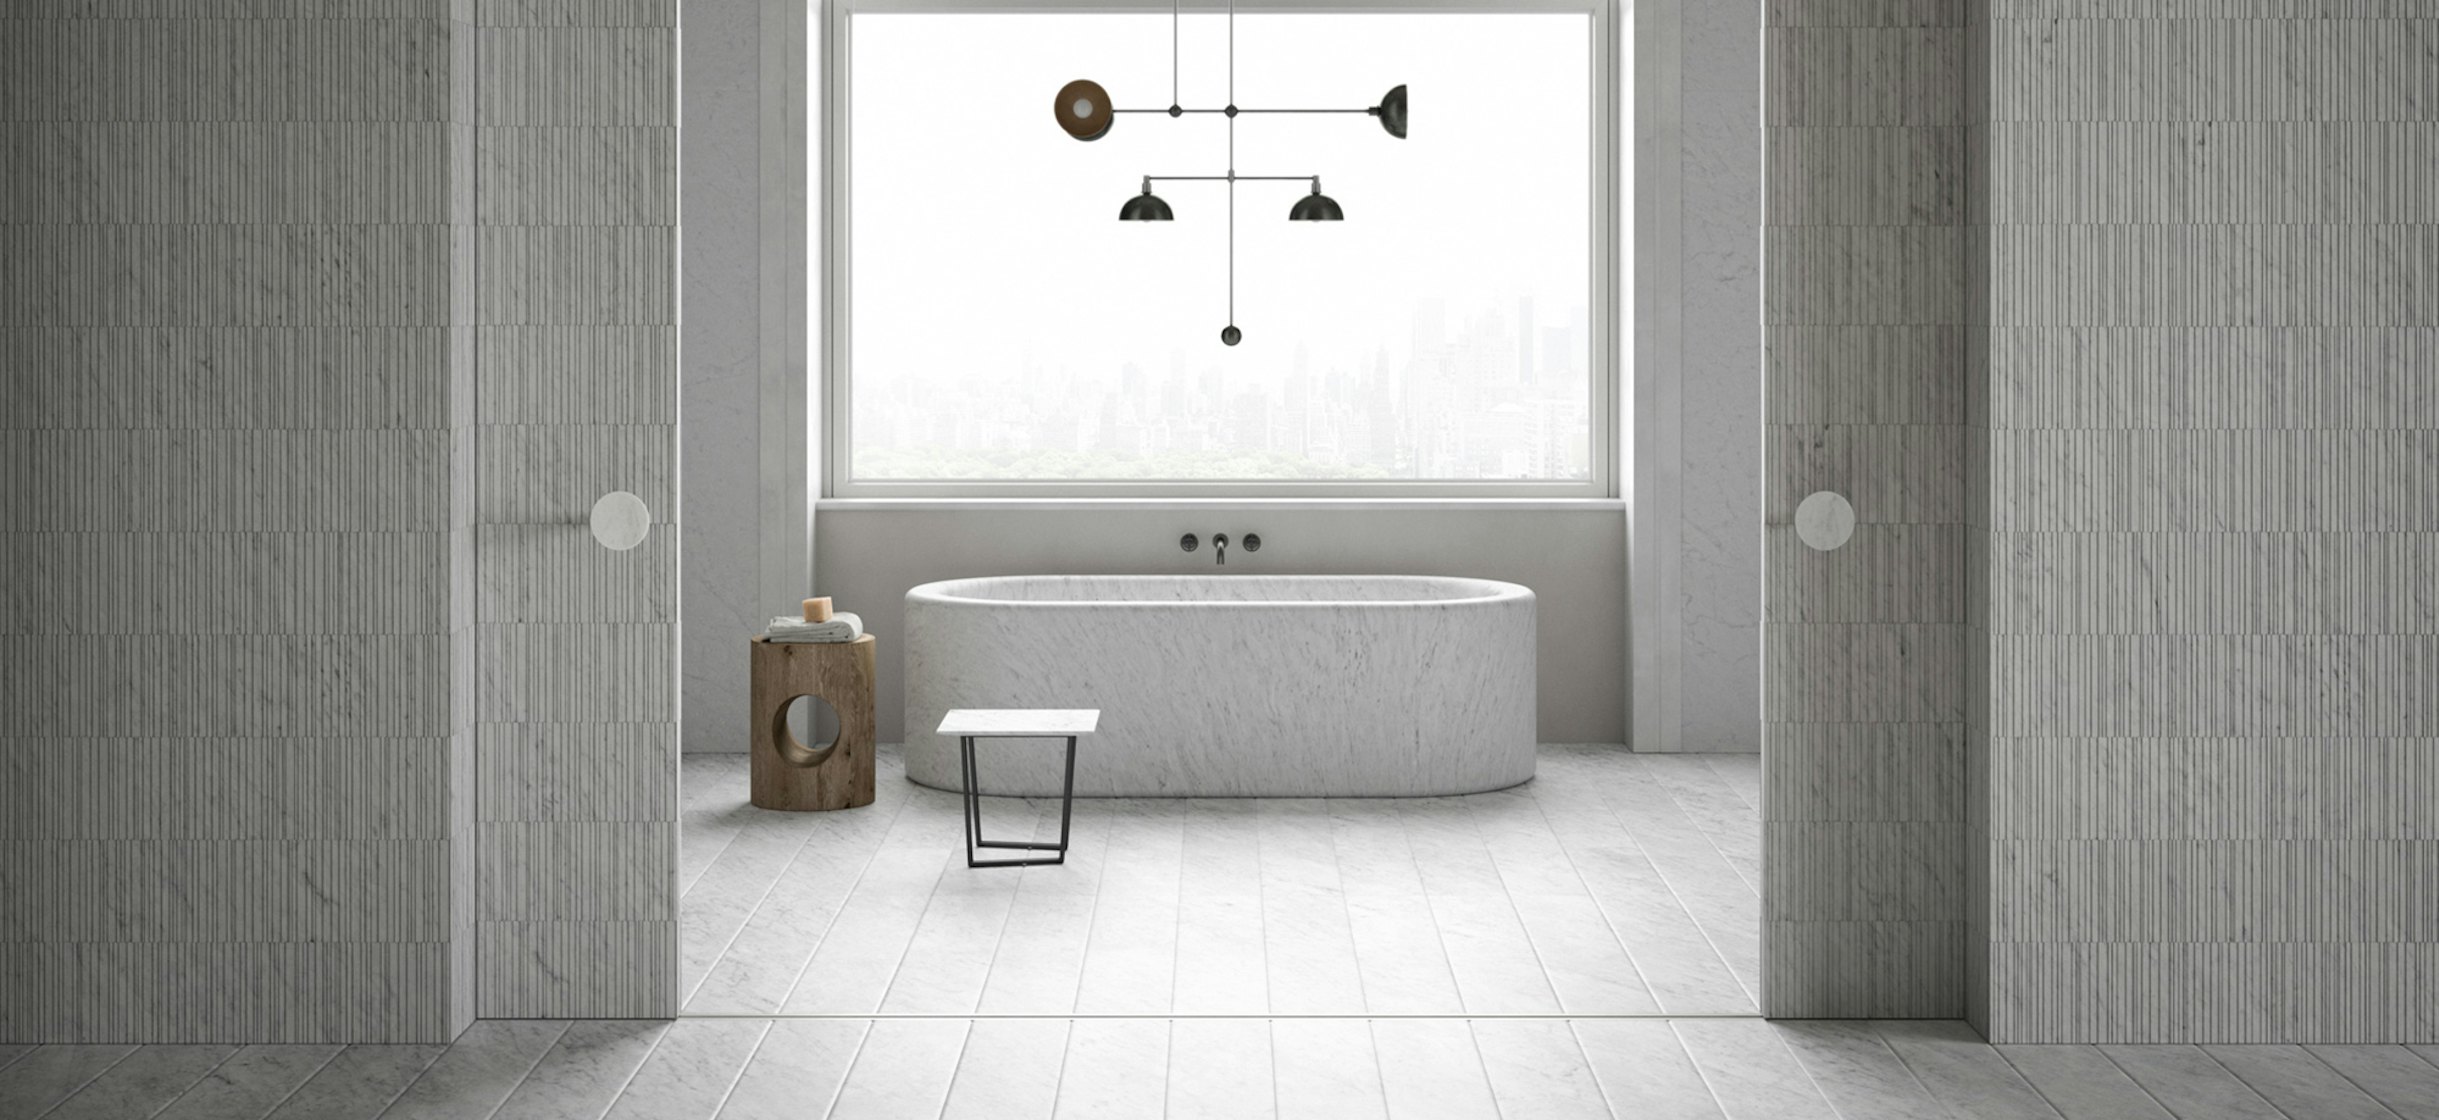 2021-04-banner_stories_bathroom-interior-ideas